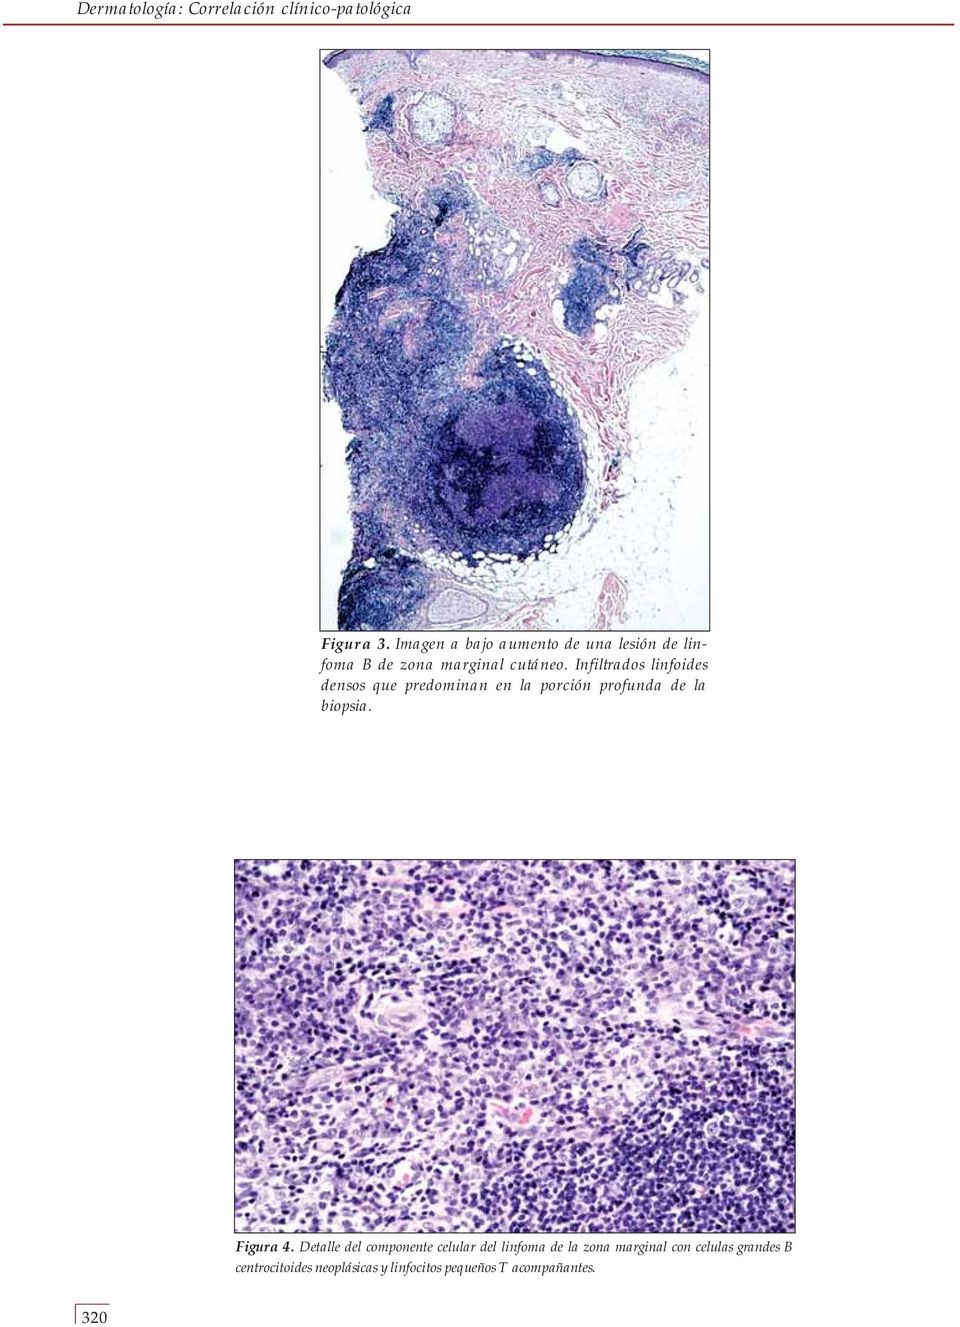 Infiltrados linfoides densos que predominan en la porción profunda de la biopsia. Figura 4.